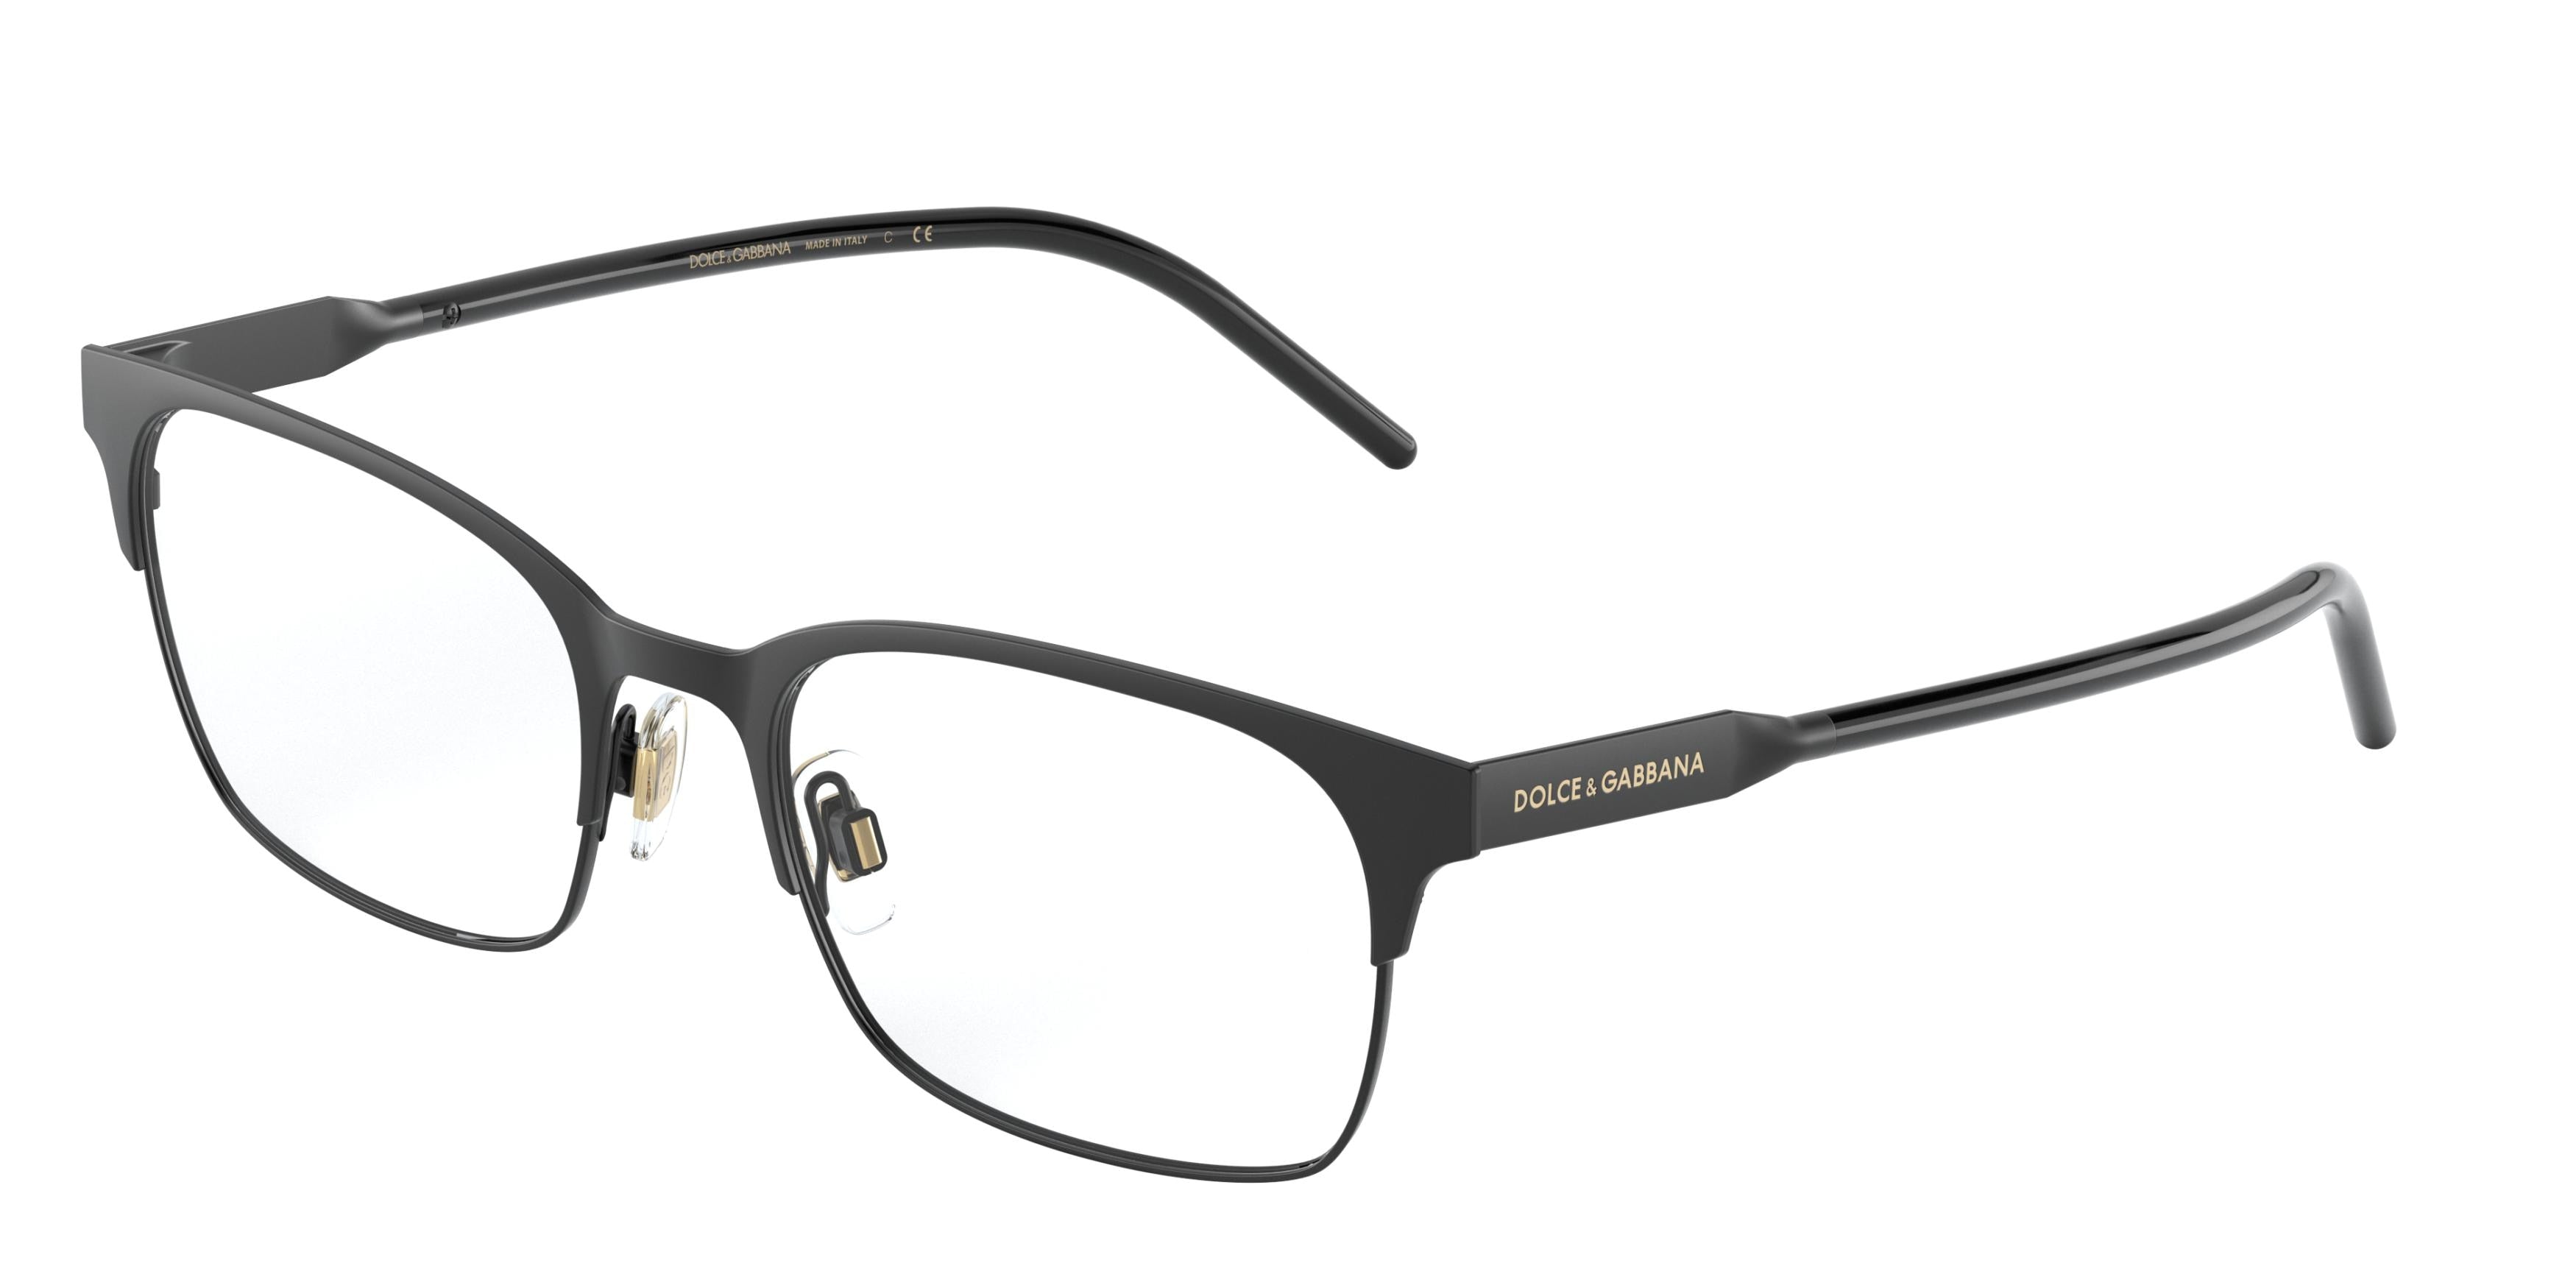 DOLCE & GABBANA DG1330 Rectangle Eyeglasses  1345-Matte Black/Black 54-150-19 - Color Map Black